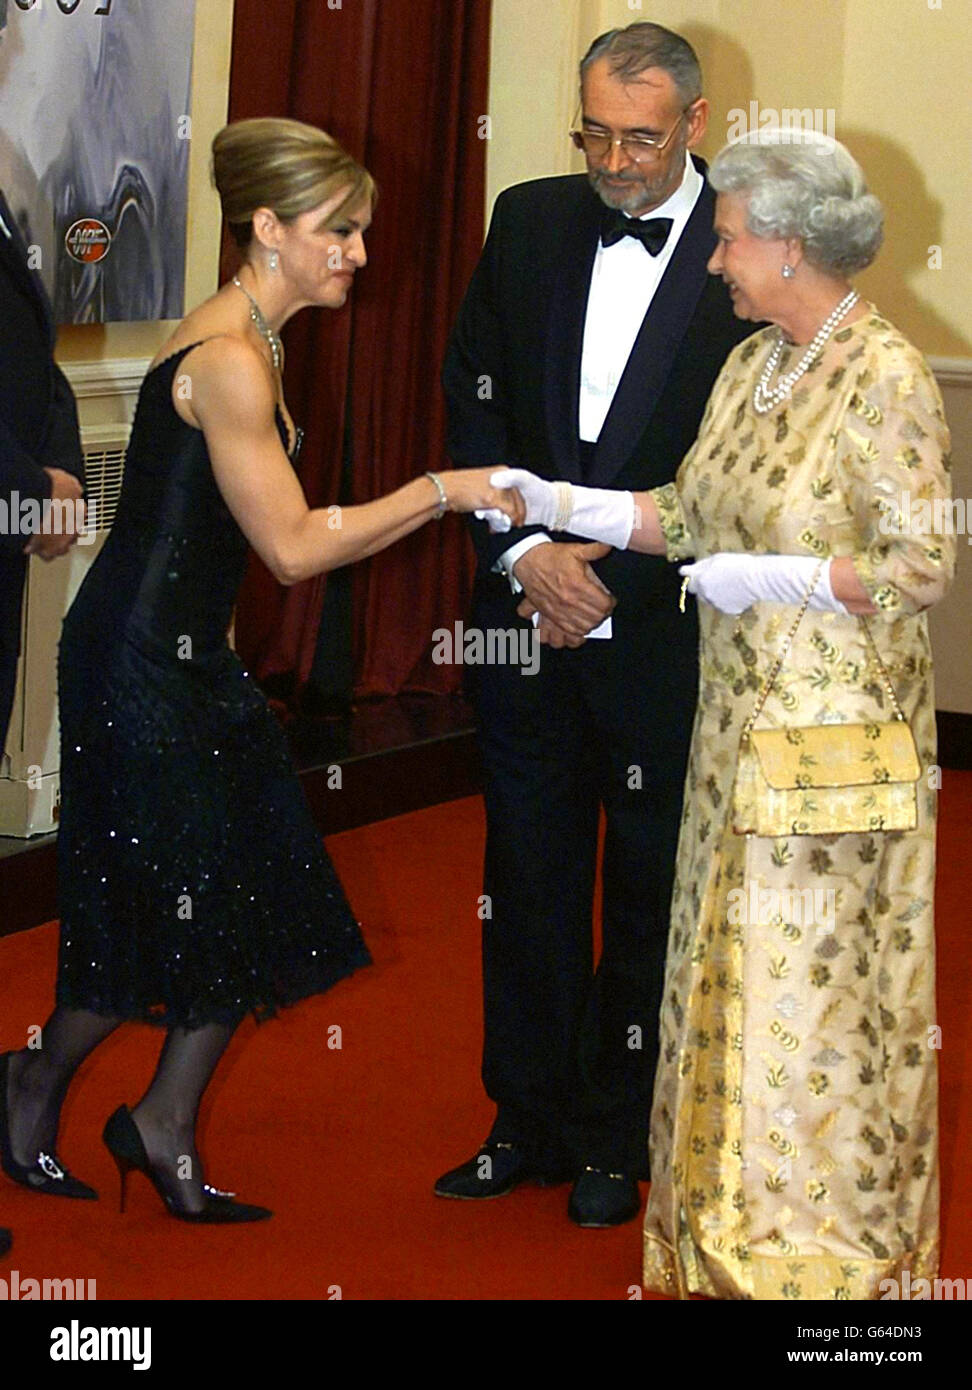 La Regina Elisabetta II della Gran Bretagna incontra Madonna alla prima mondiale del nuovo film di James Bond Die Annother Day - in cui la stella americana ha un ruolo di primo piano - alla Royal Albert Hall. Foto Stock